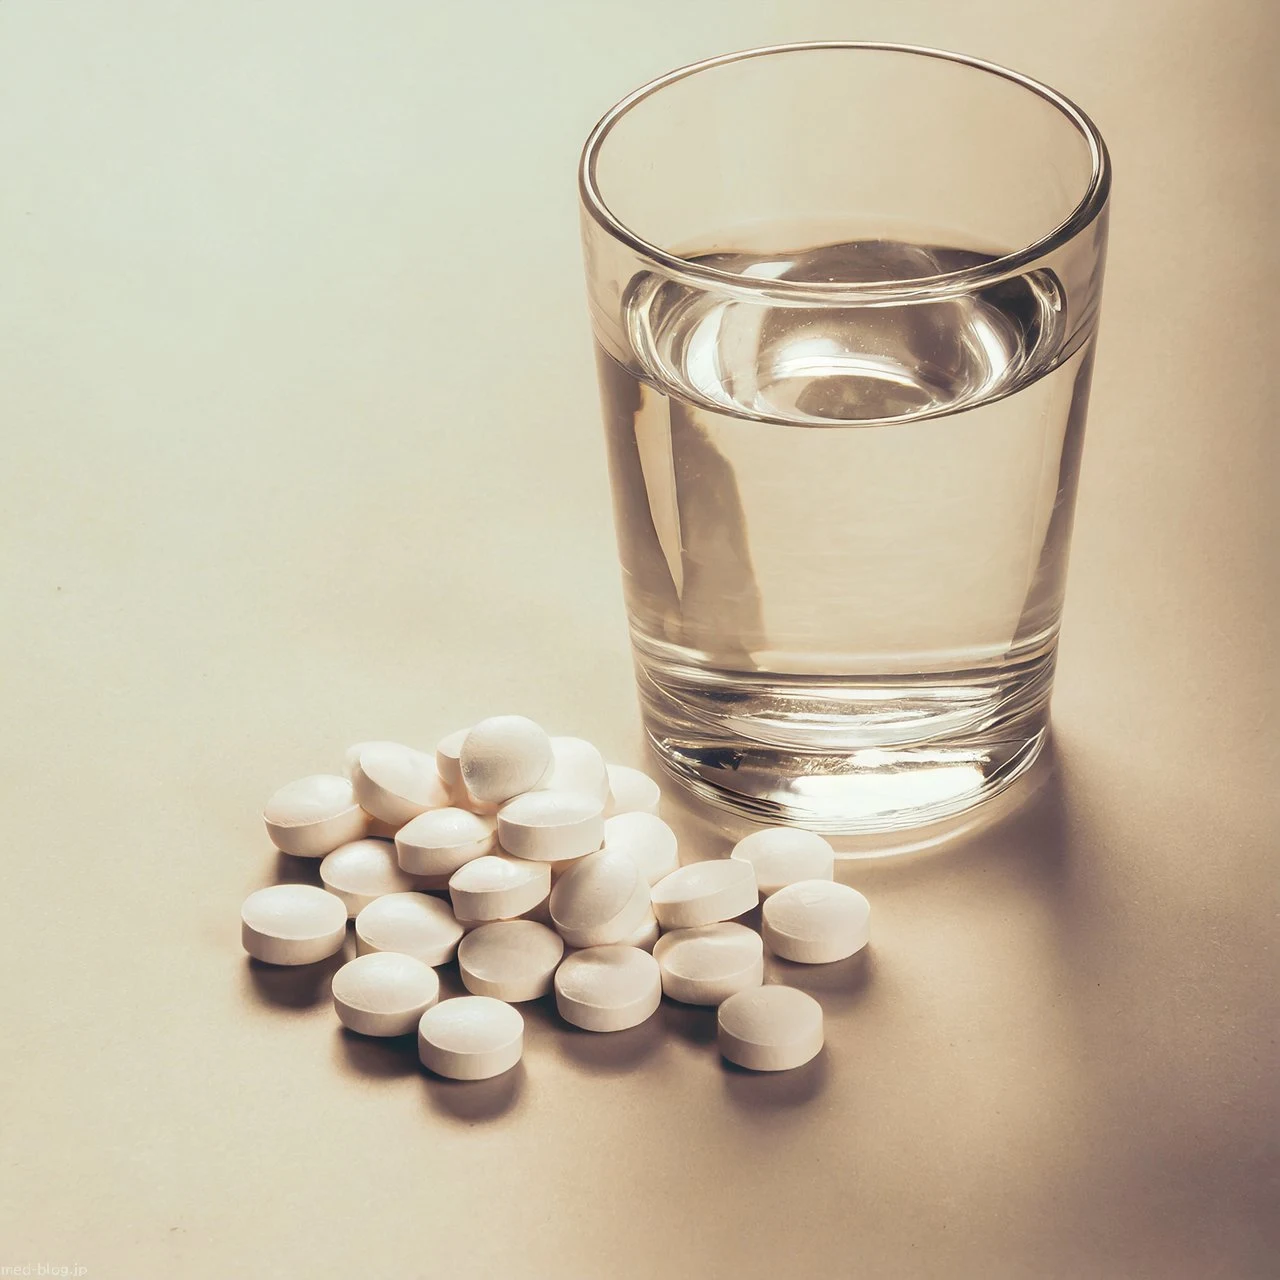 白い机の上に20条ほどの白い錠剤と水の入った透明なコップが置かれている写真.jpg (1280×1280)